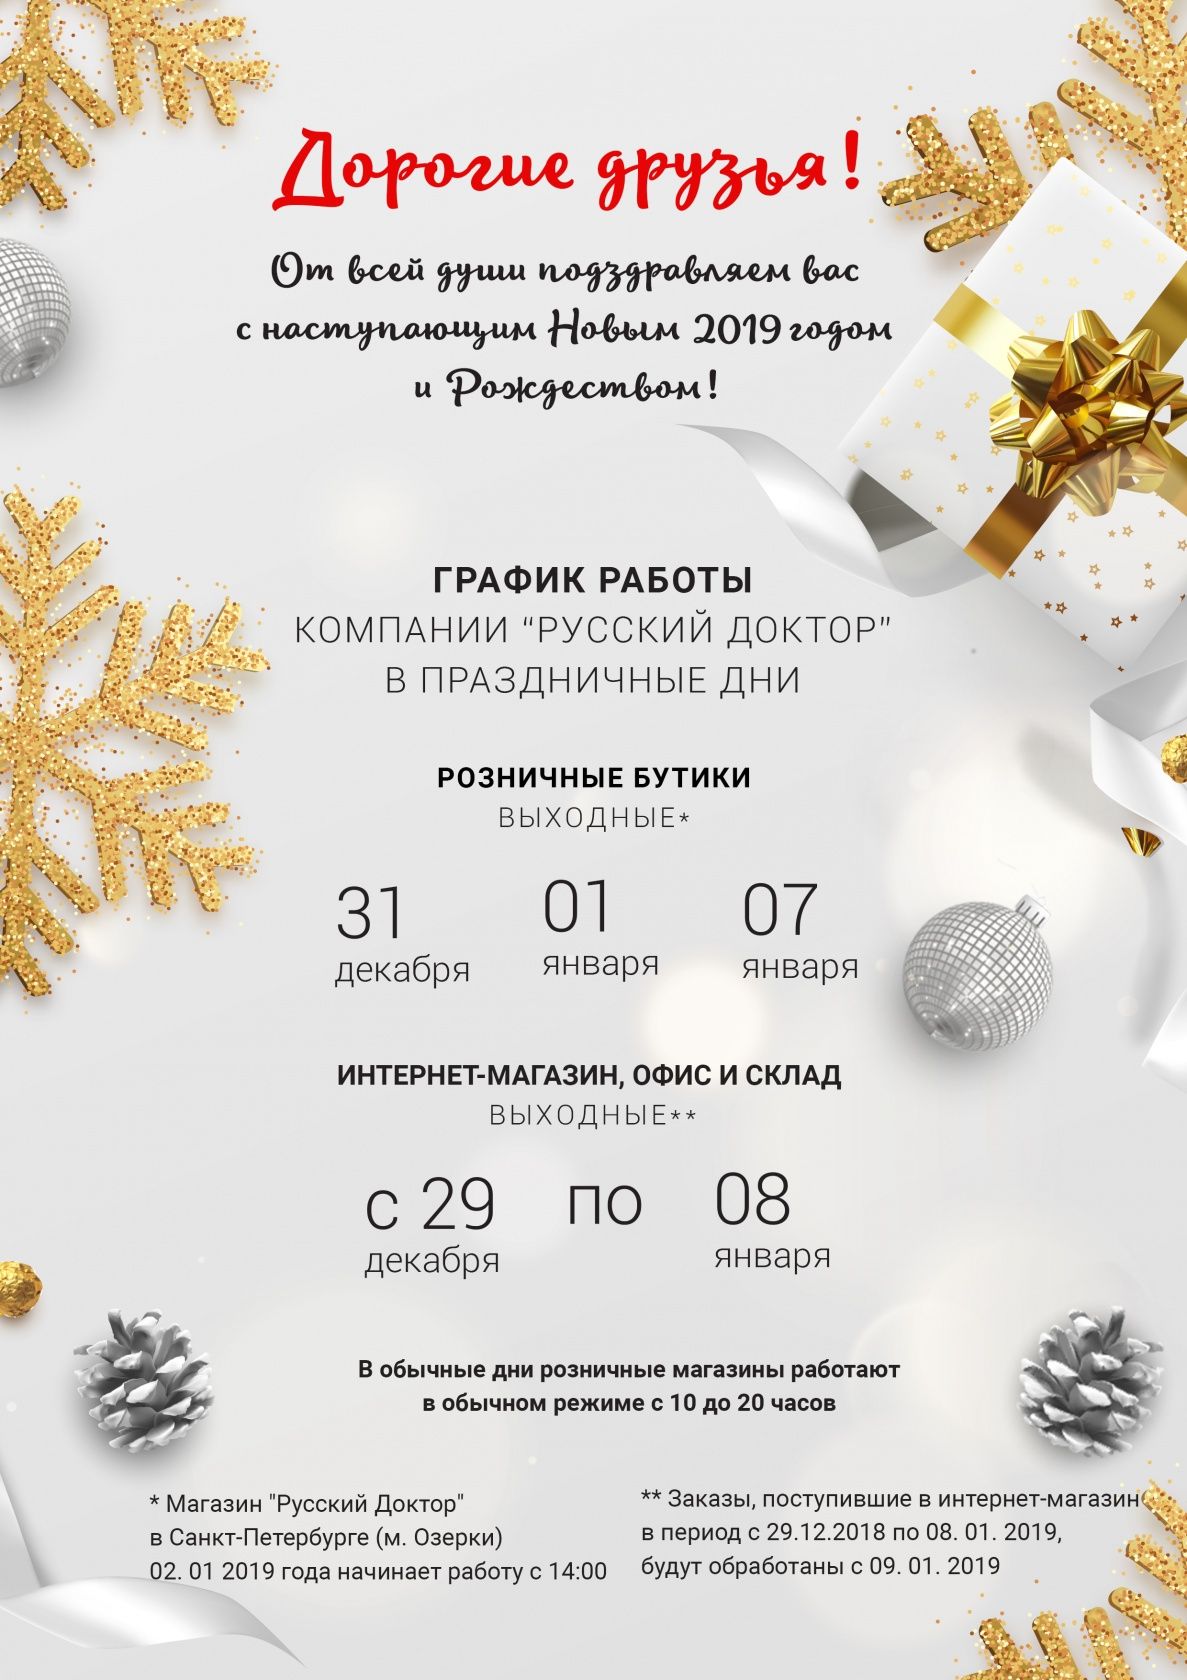 С Новым Годом и Рождеством! Ваш Русский Доктор